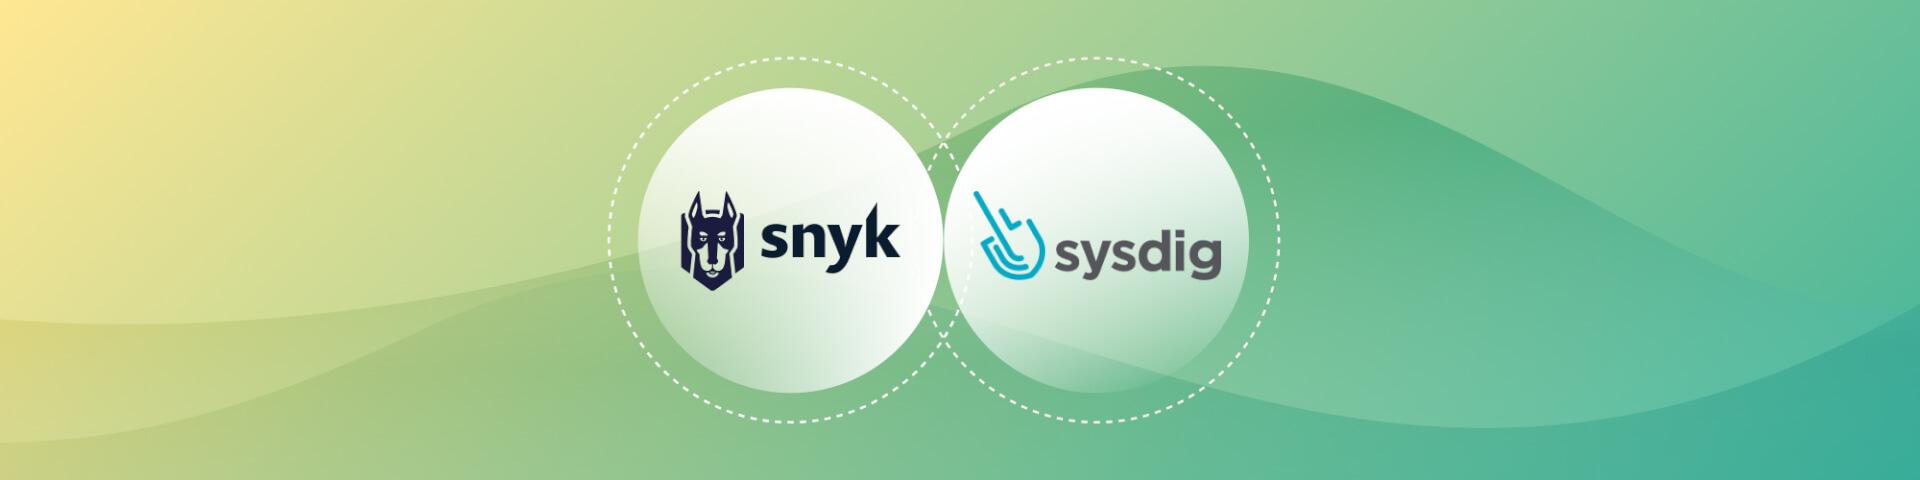 wordpress-sync/header-snyk-sysdig